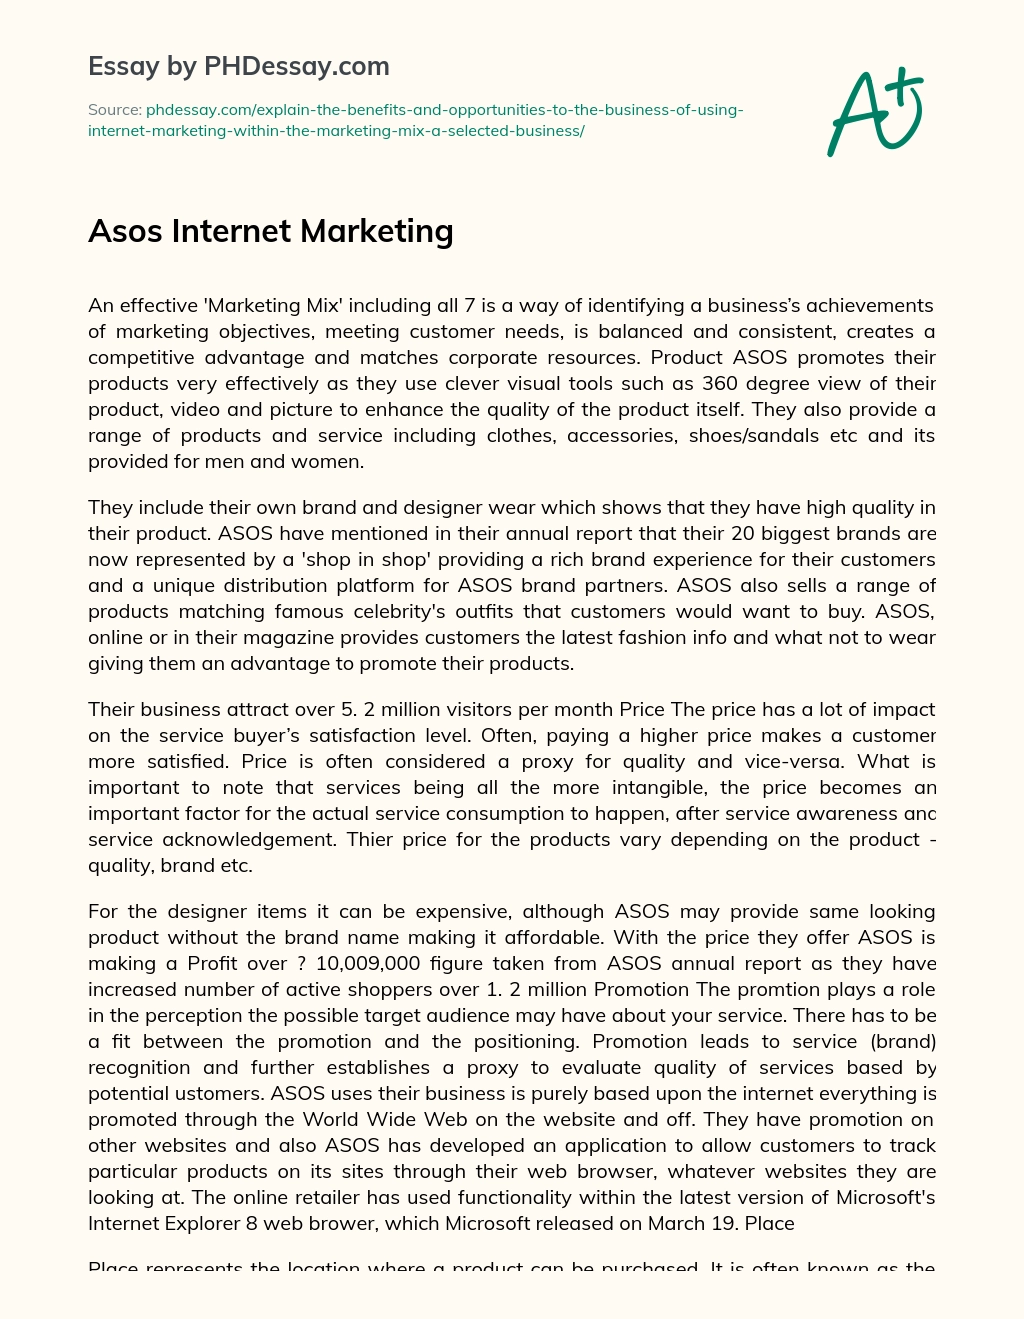 Asos Internet Marketing essay